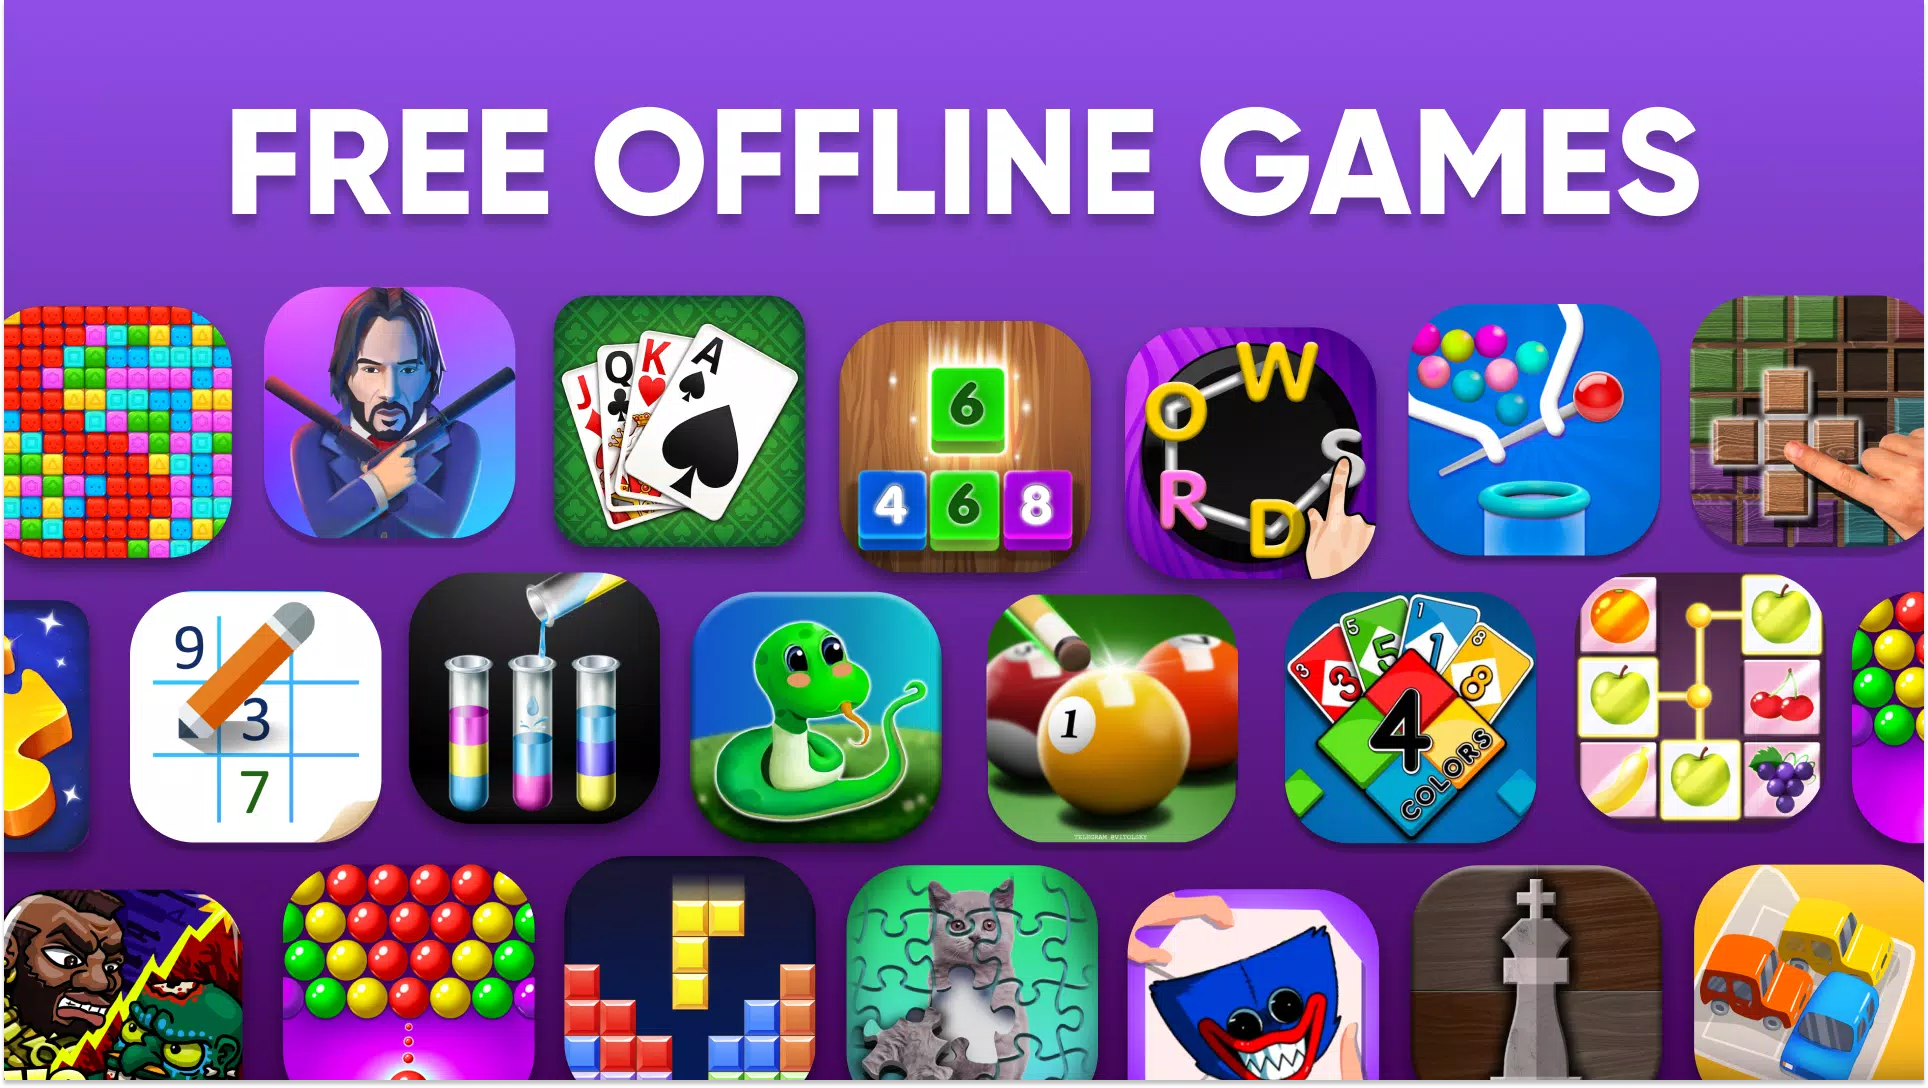 Download do APK de Jogos Offline - Sem Internet para Android